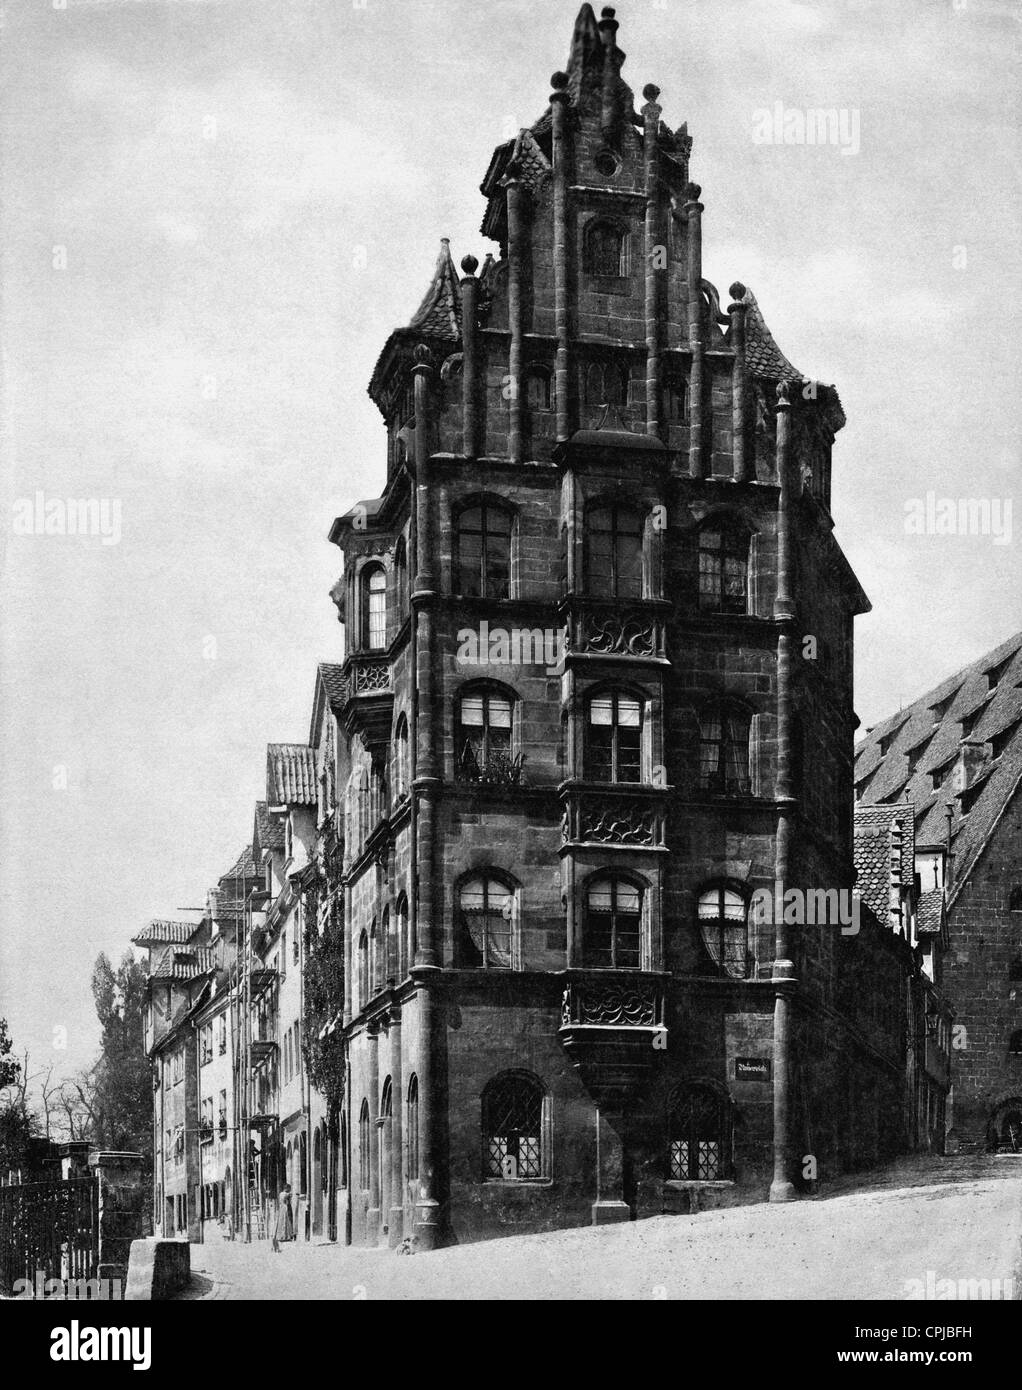 Toplerhaus in Nuremberg Stock Photo